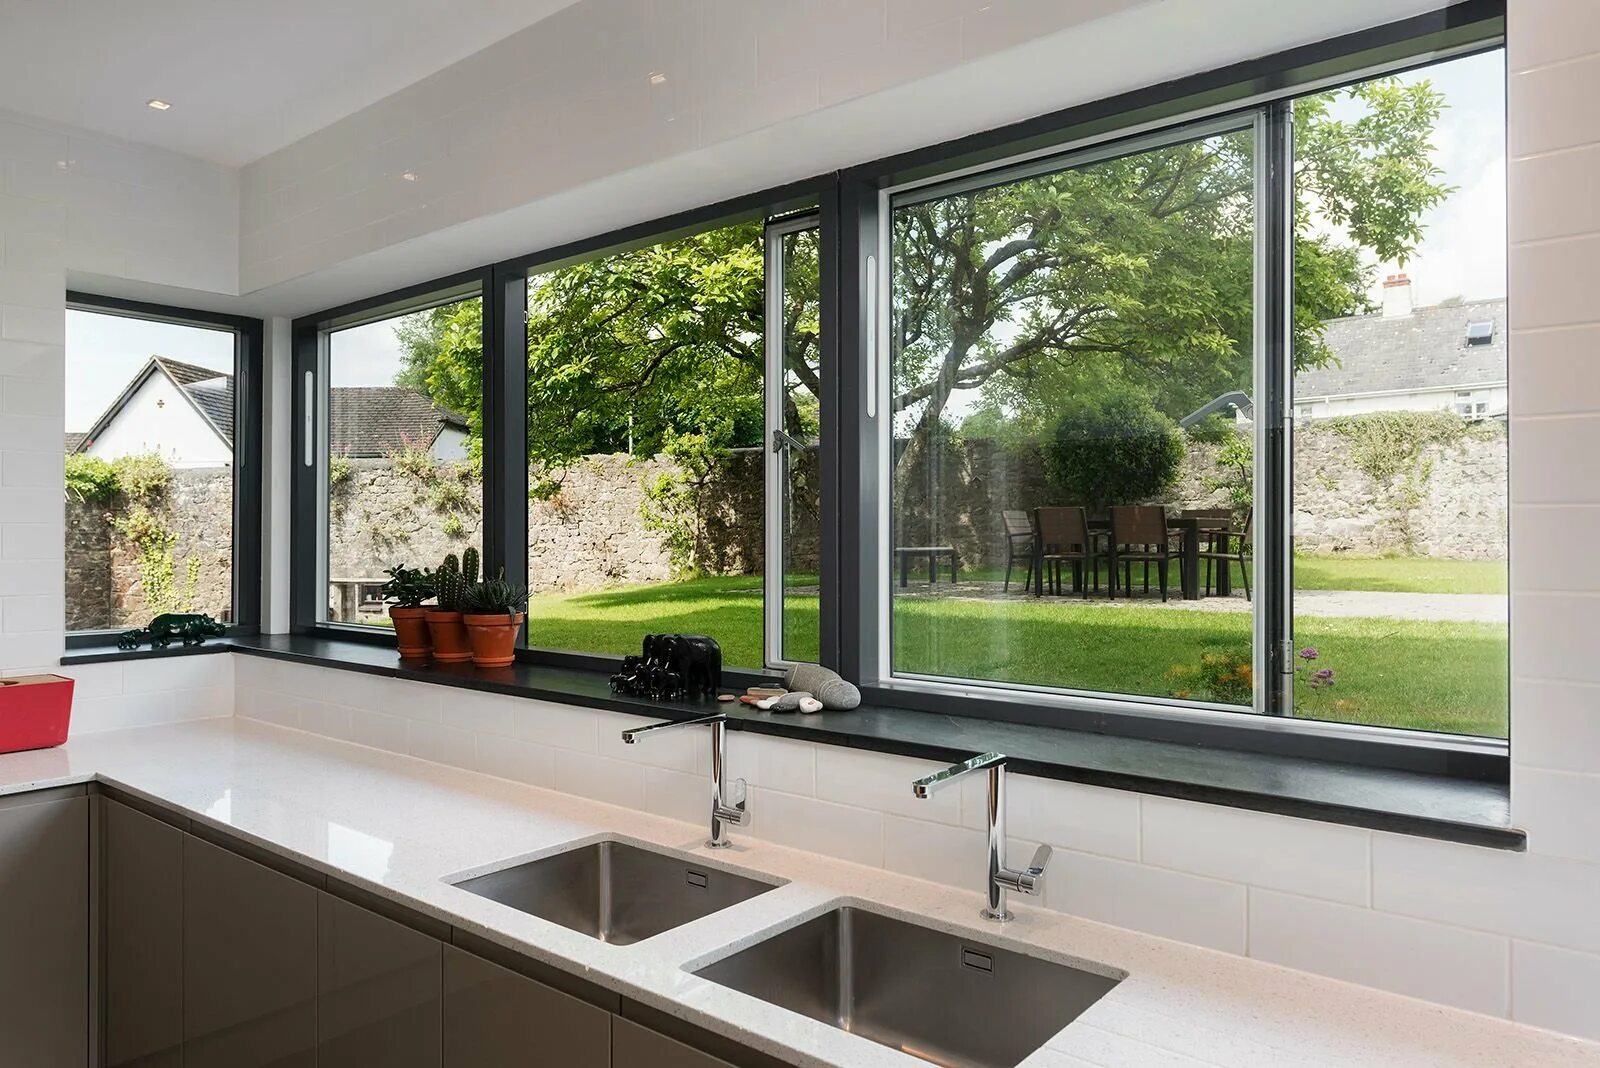 Купить углового окна. Кухня с окном в частном доме. Кухня с панорамными окнами. Угловое панорамное окно.